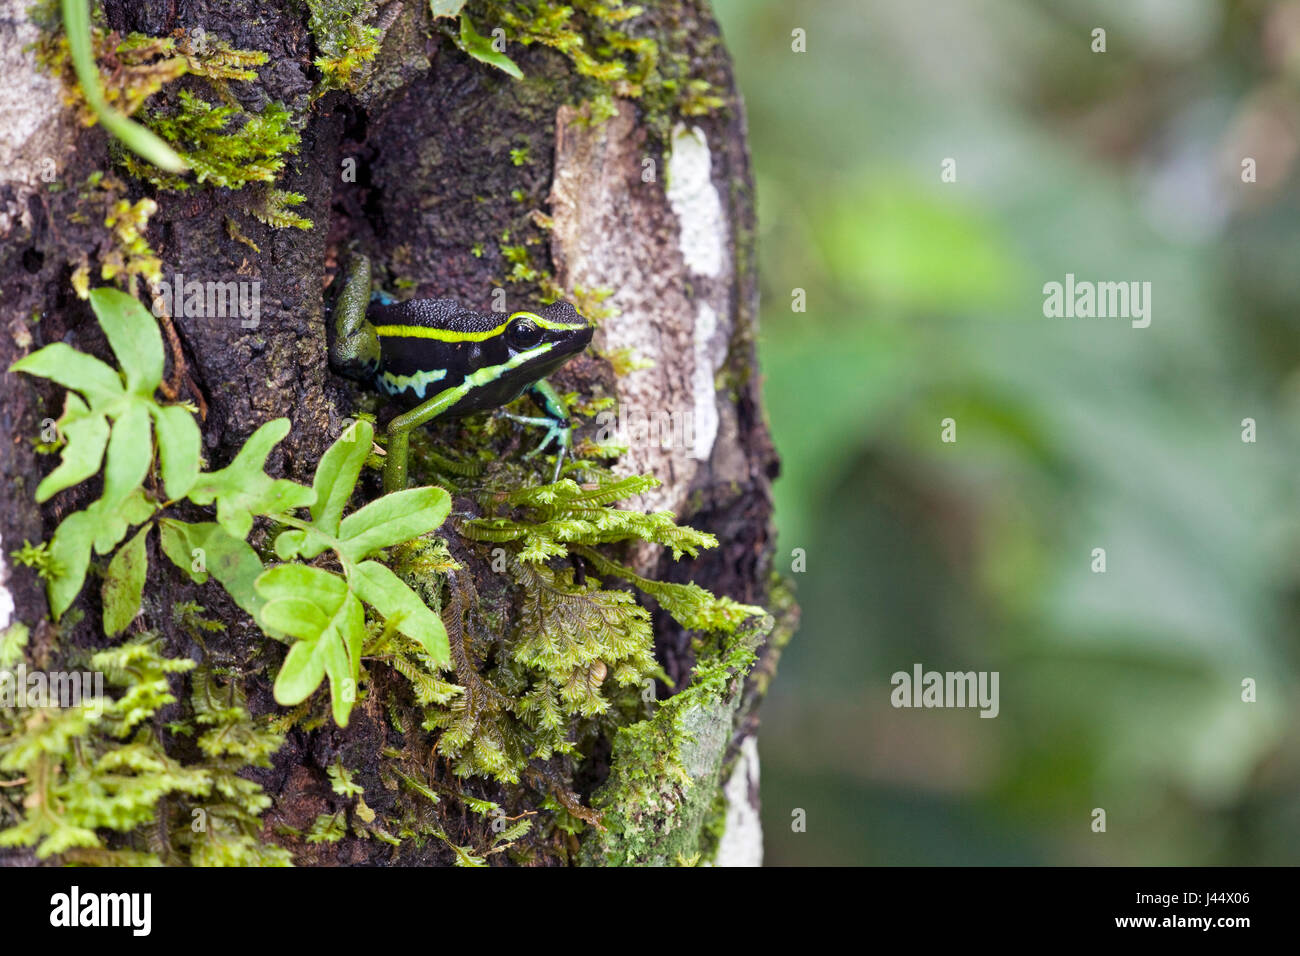 Foto de tres rayas poison dart frog sentado en un agujero de árbol Foto de stock